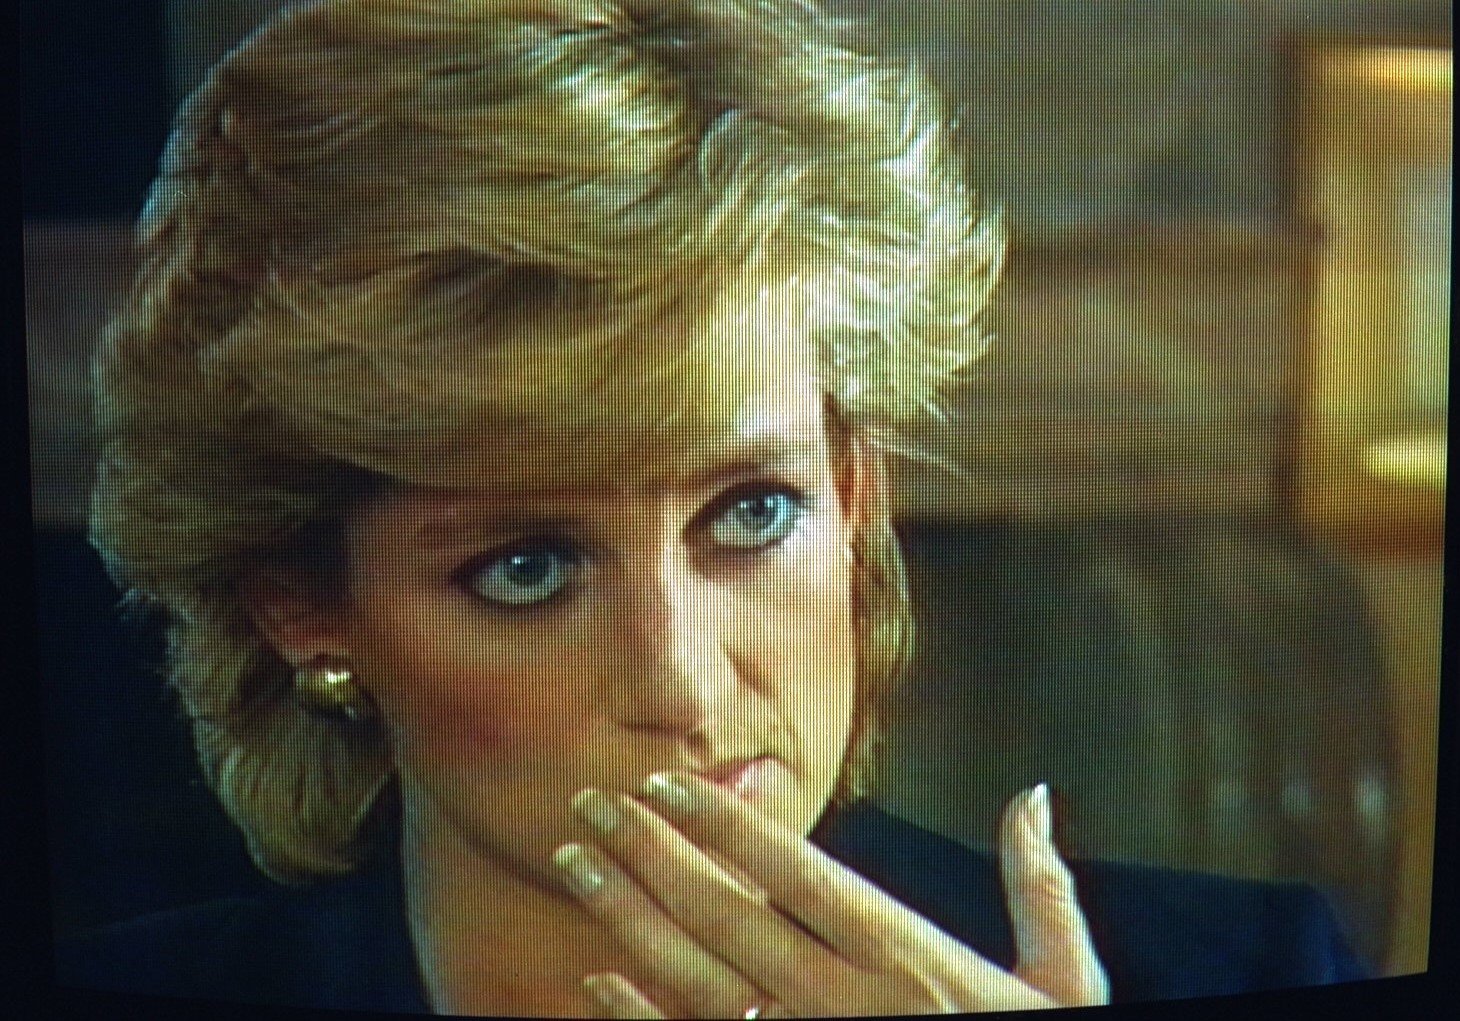 Shot of Princess Diana during 'Panorama' interview